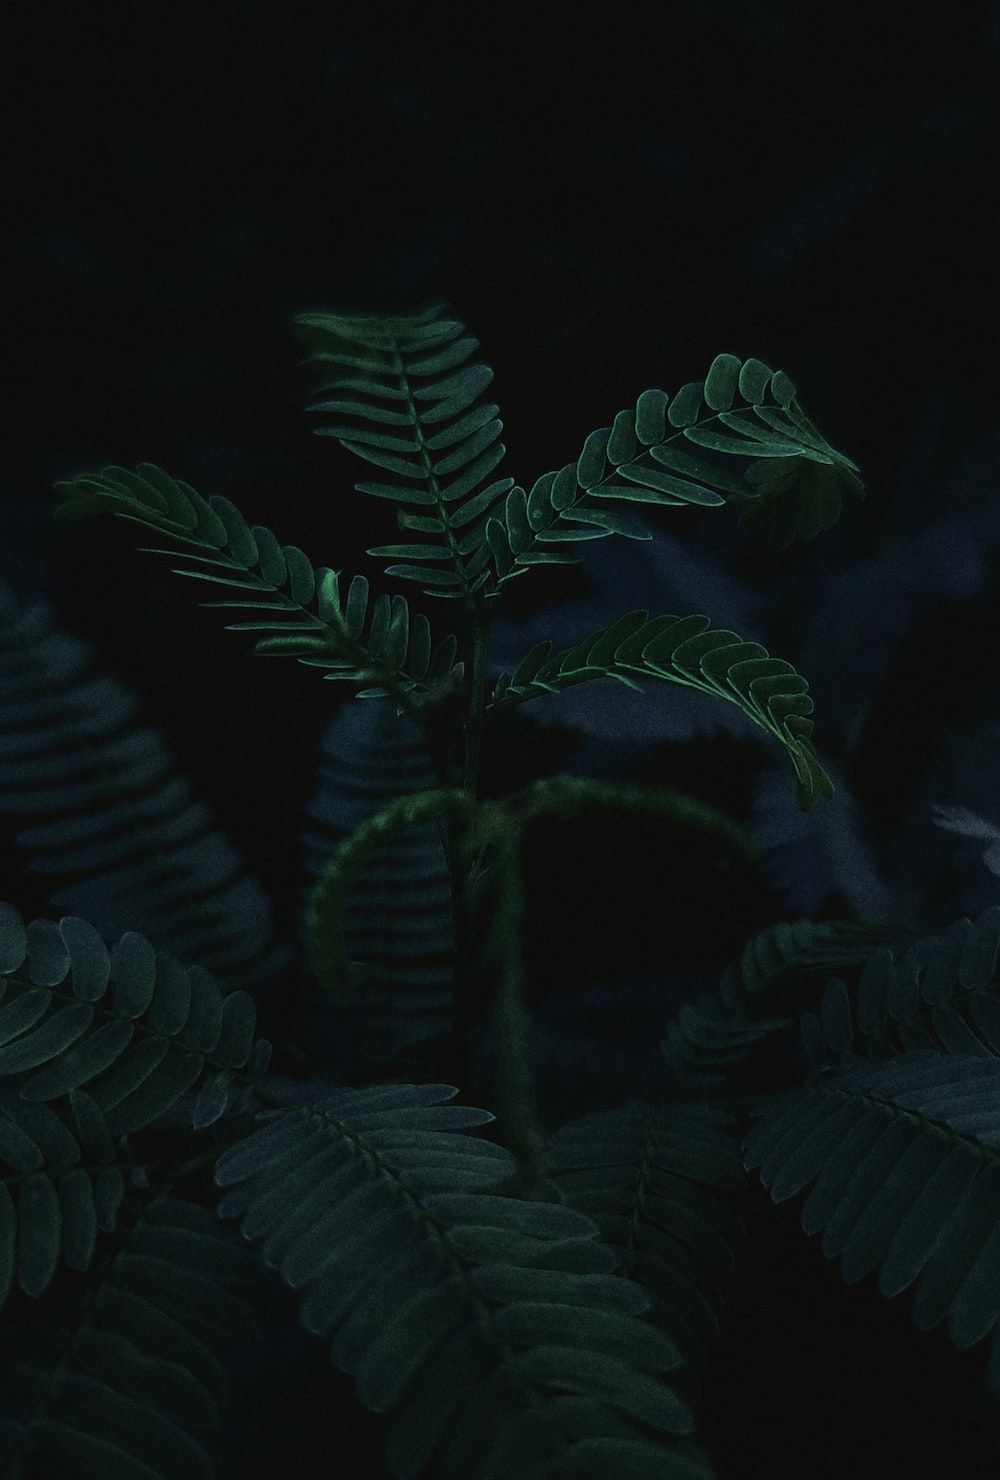 Green ferns in the dark - Dark phone